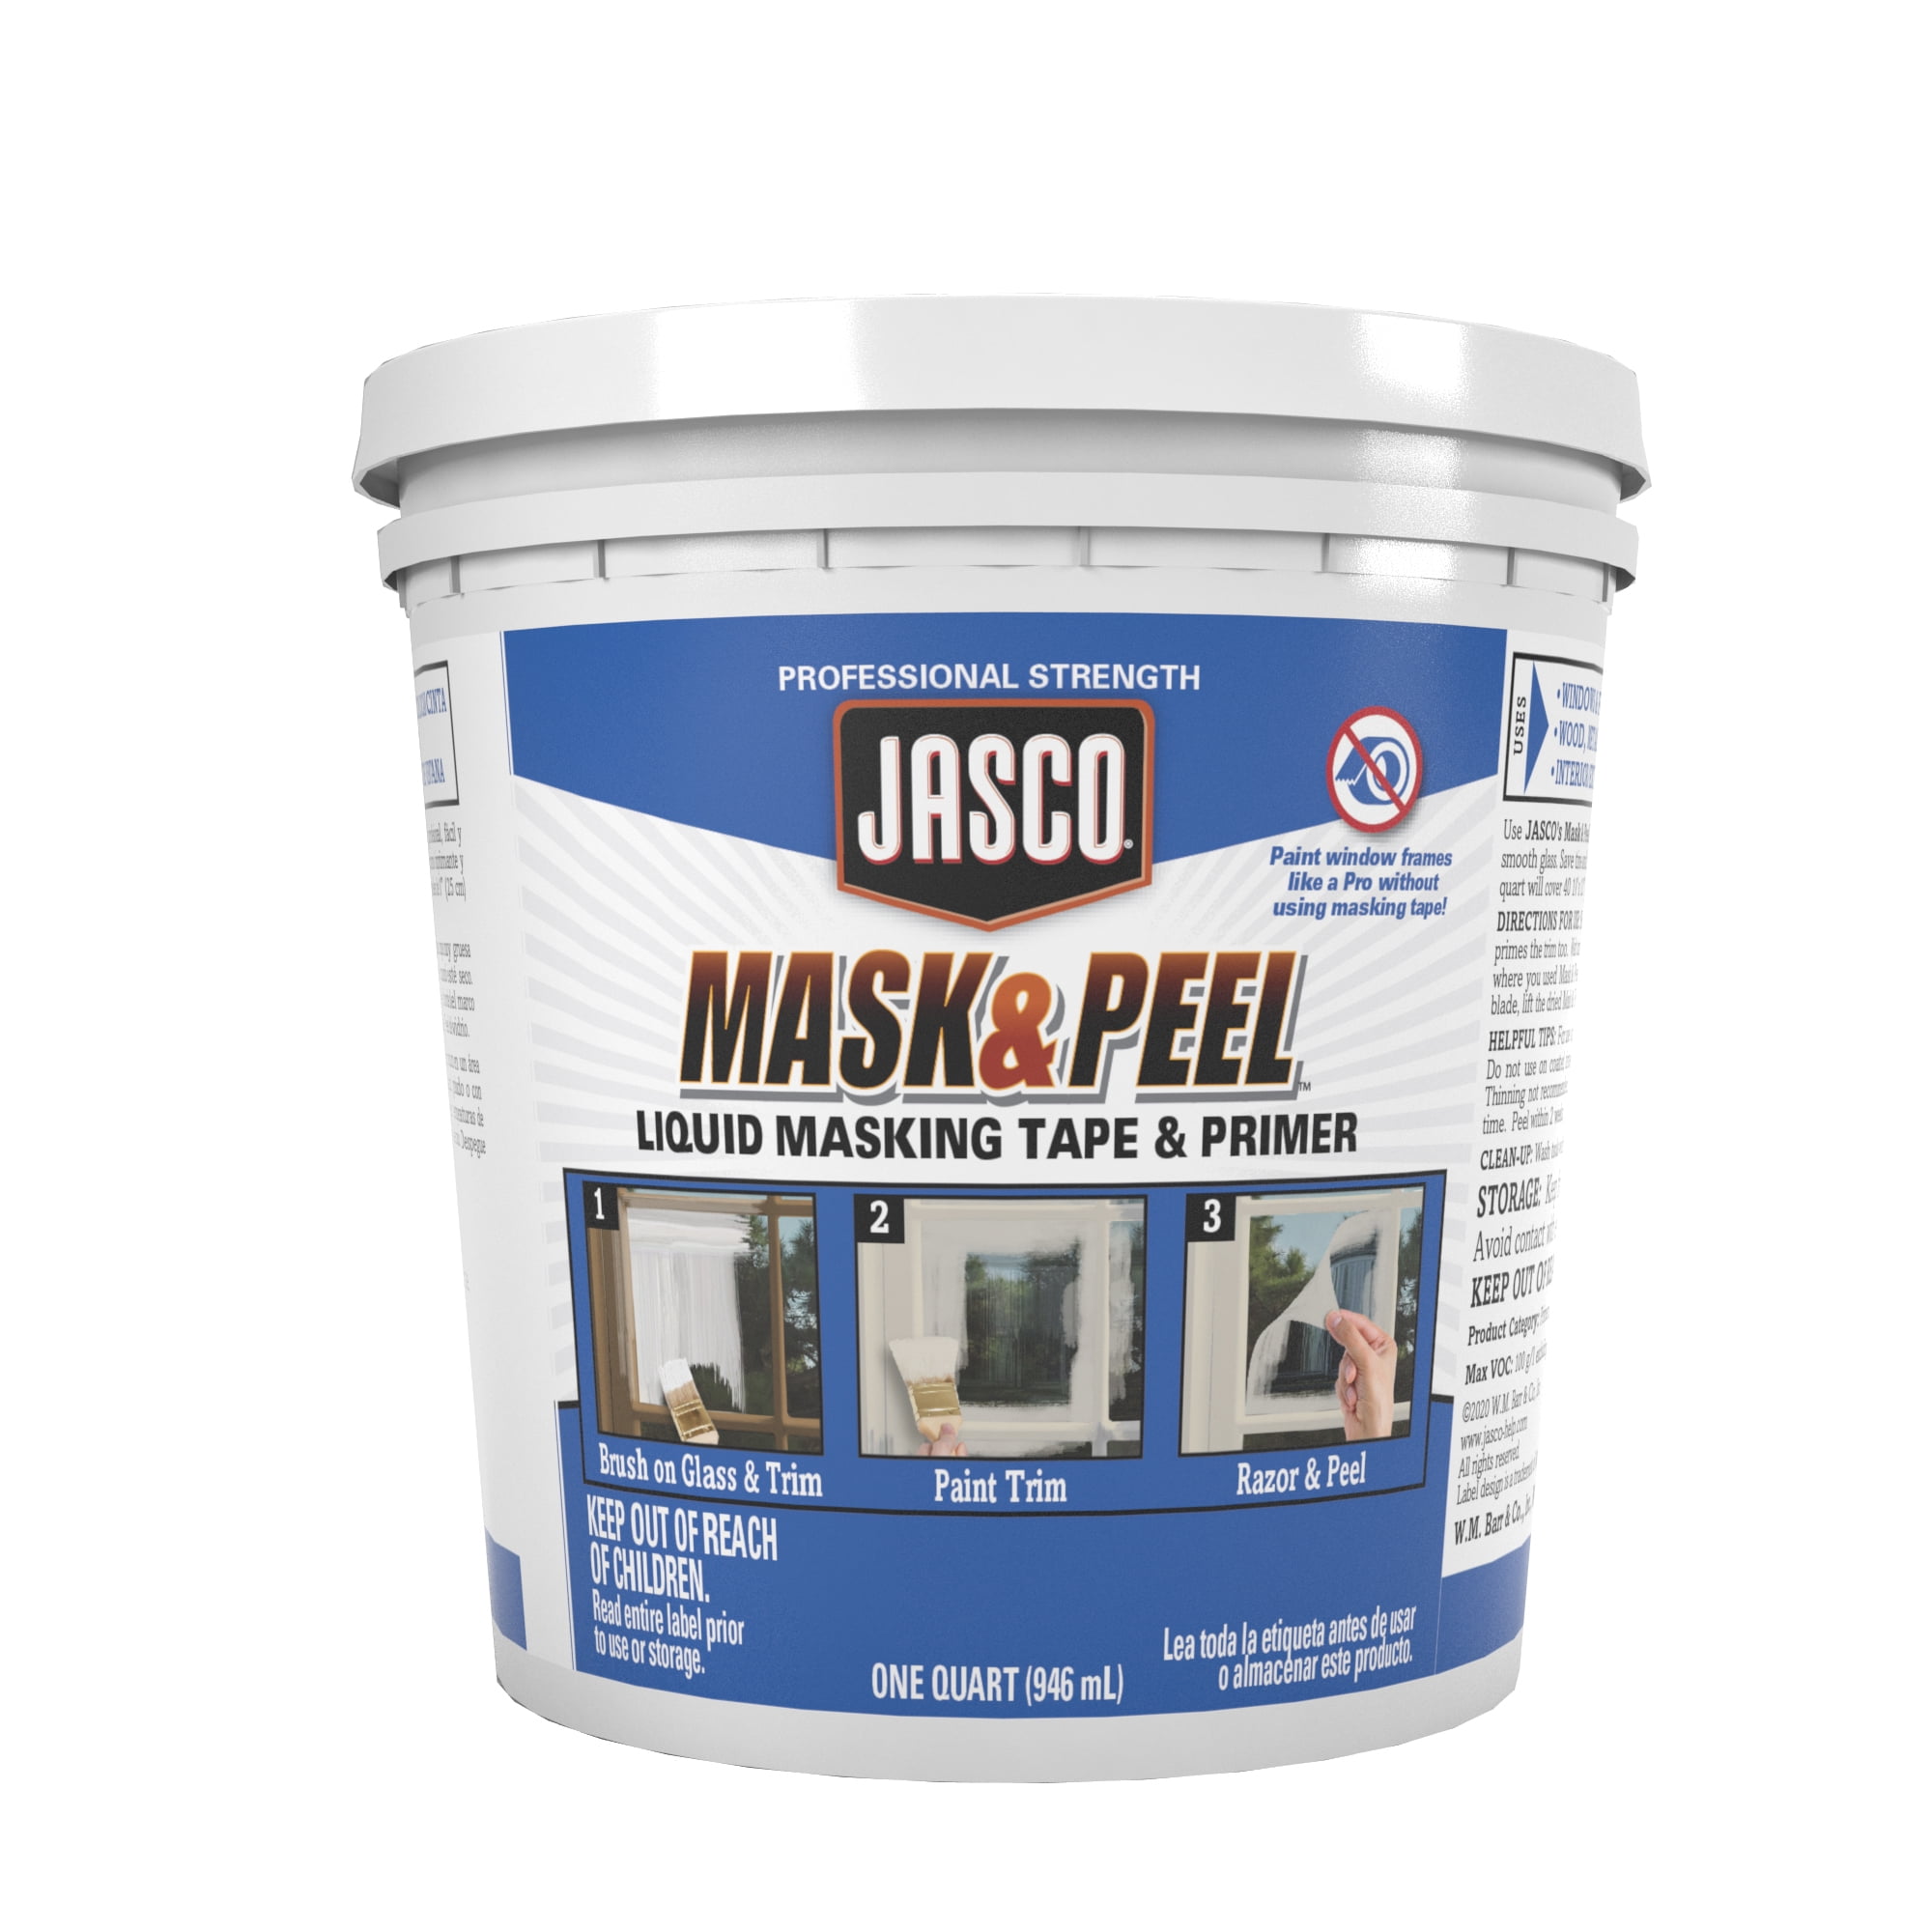 2 PACK Peel-Tek Liquid Masking Tape 1 Quart each